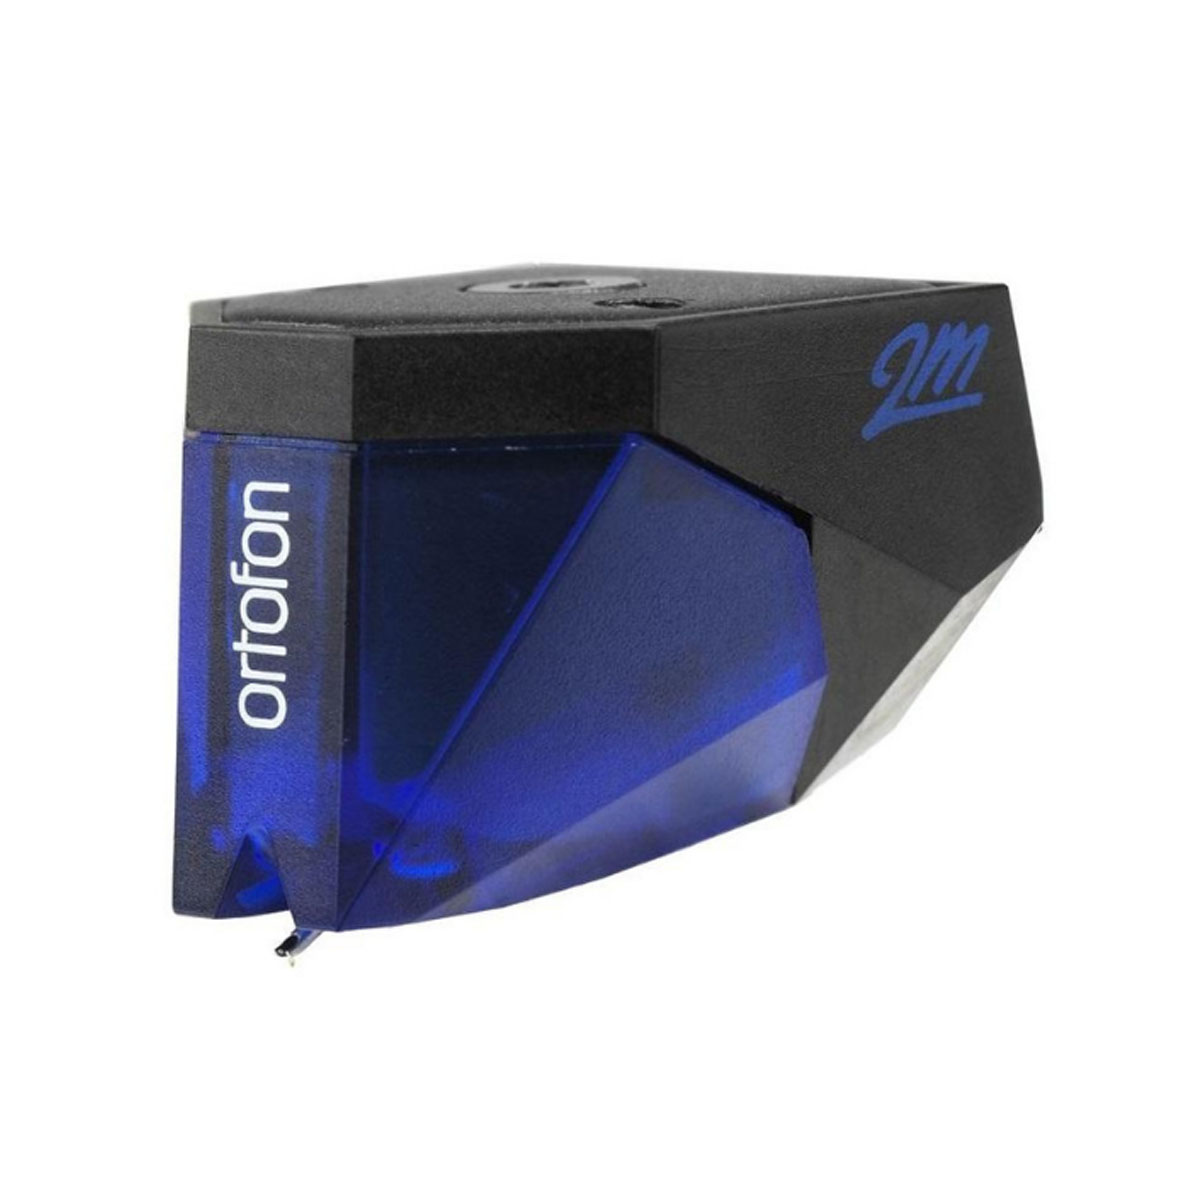 Ortofon 2M Blue + Ortofon Carbon Stylus brush